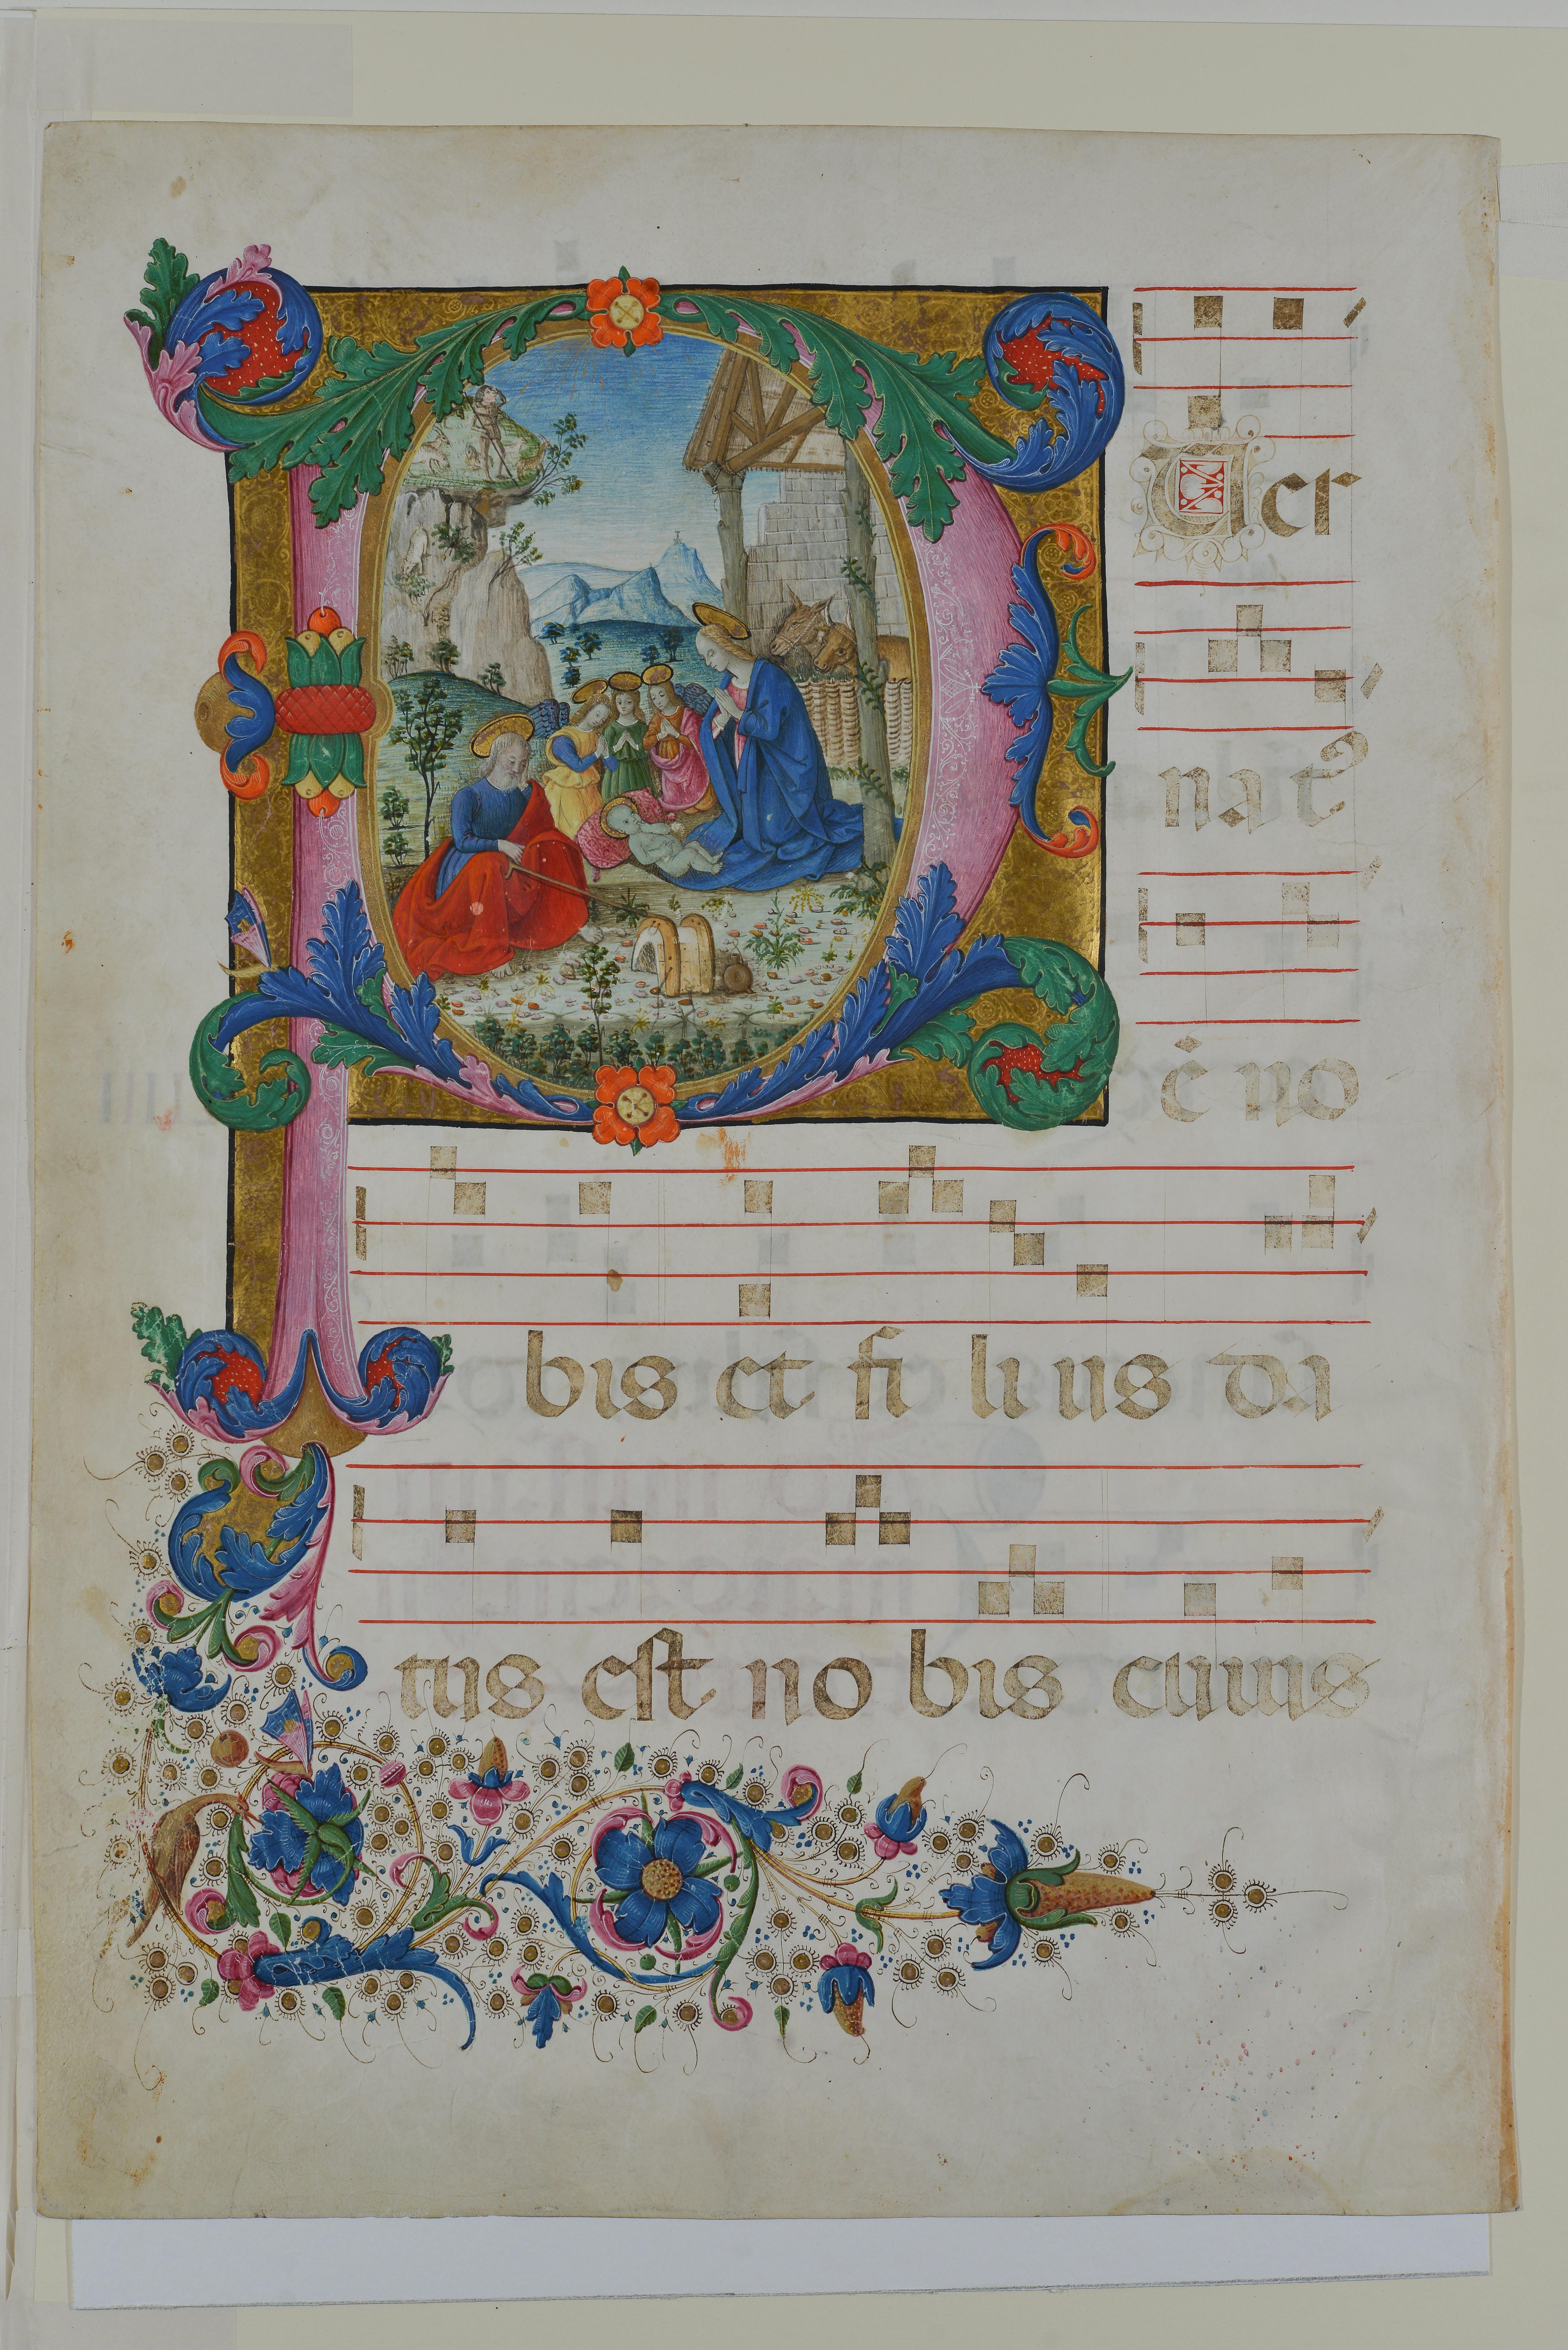 Storie di pagine dipinte. Manoscritti e miniature recuperati dal Nucleo Tutela del Patrimonio di Firenze